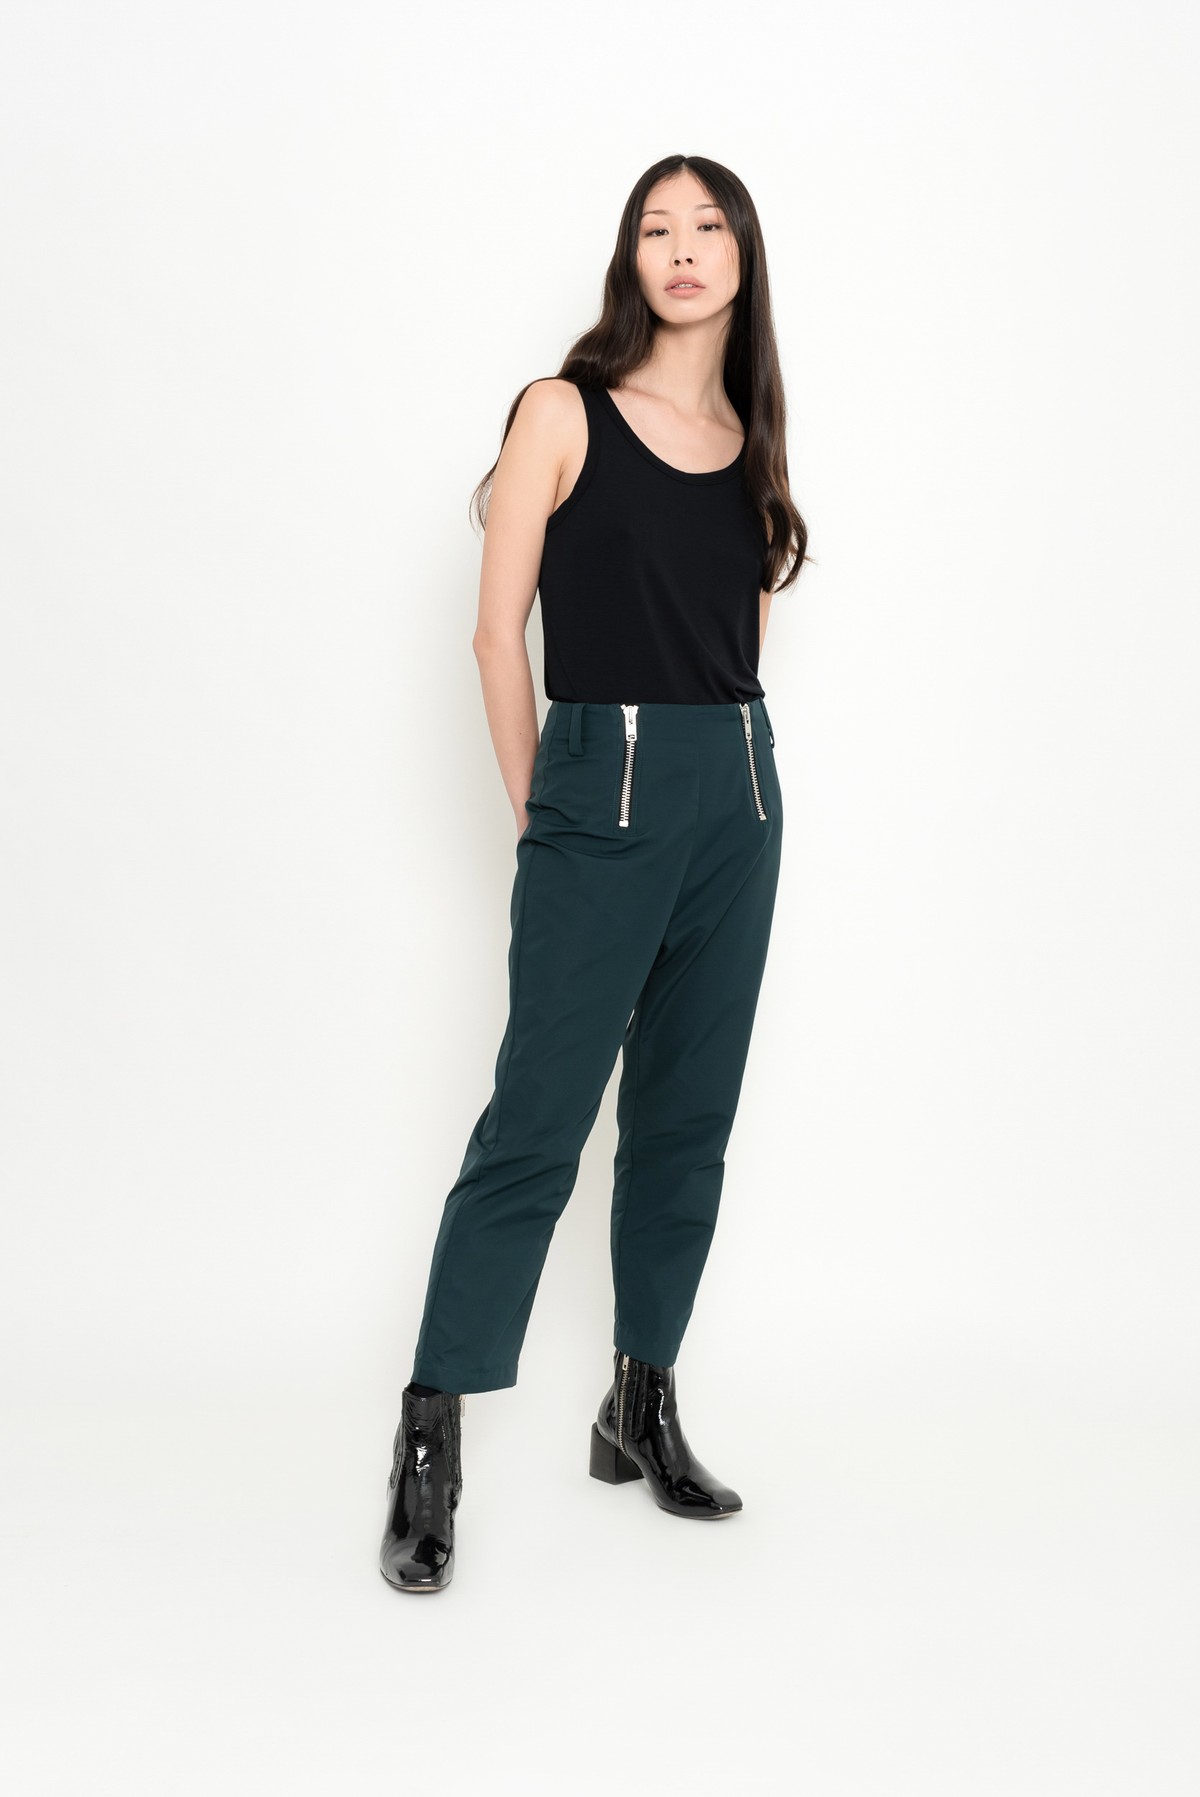 calça reta esportiva com maxi zíper | tailored sport pants with zippers